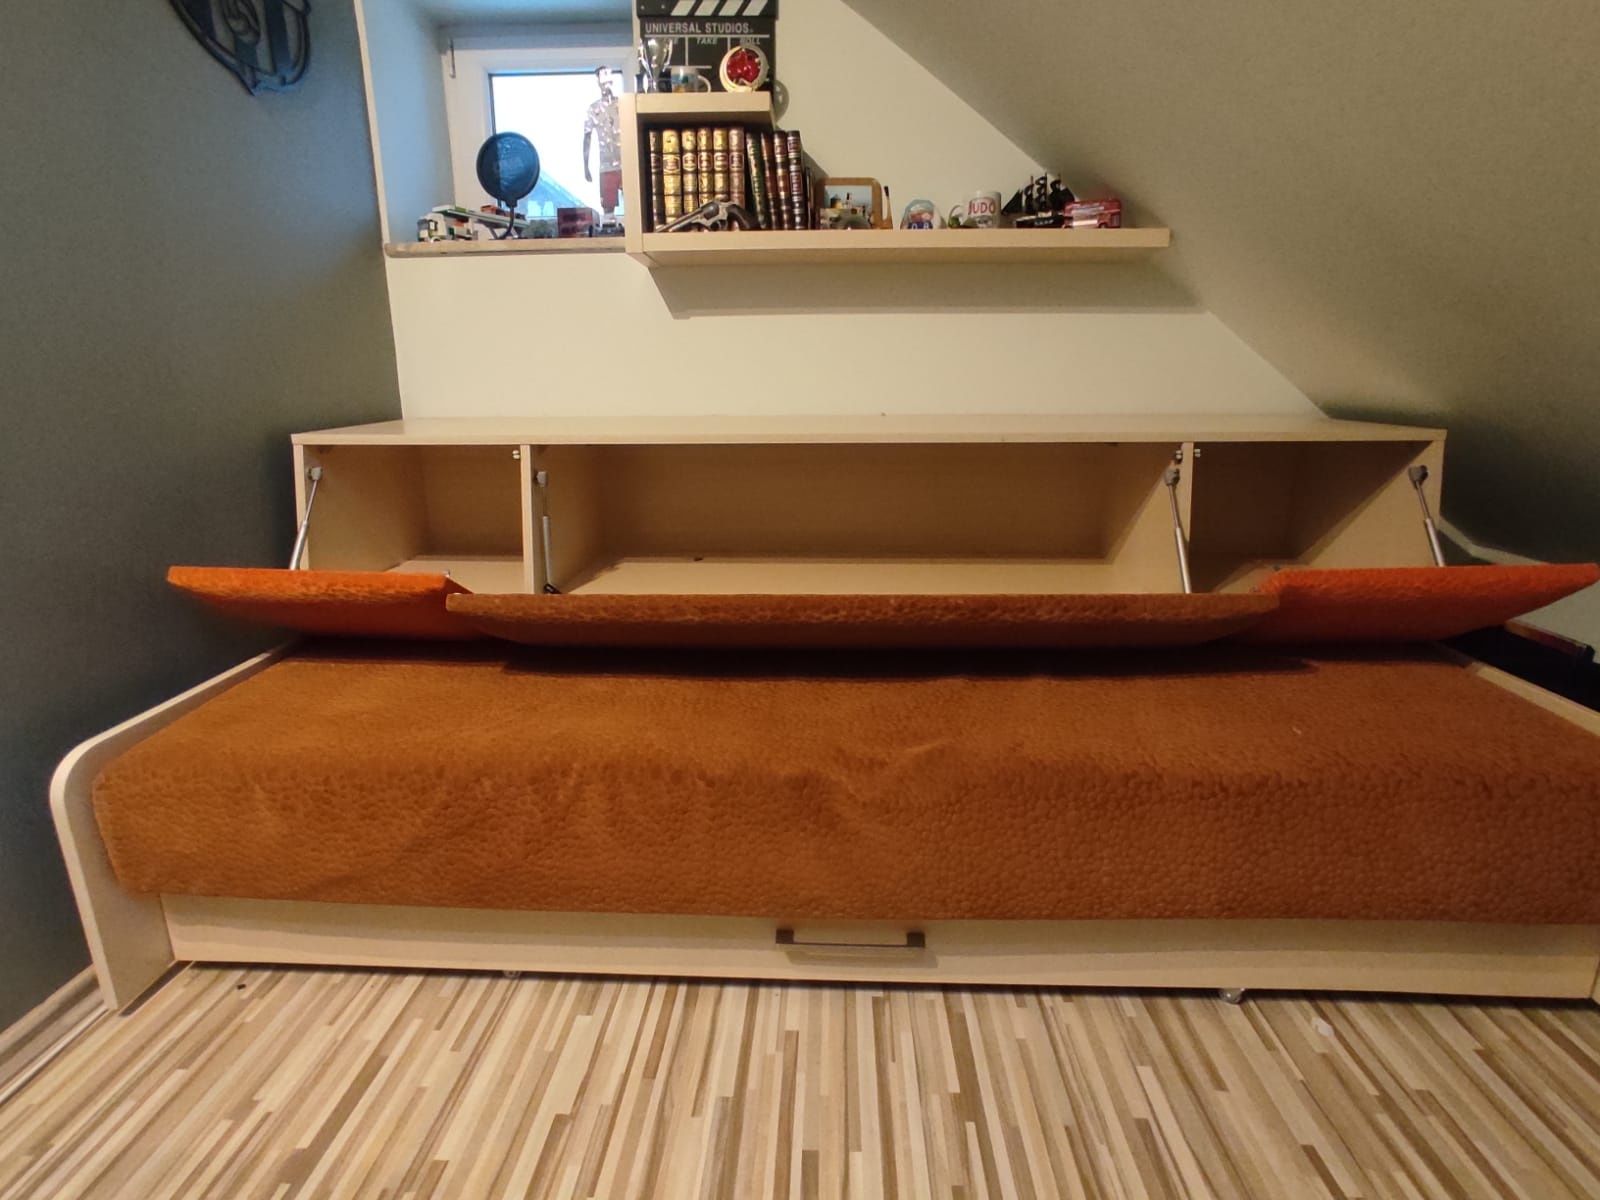 Łóżko z szafką i szuflada na pościel